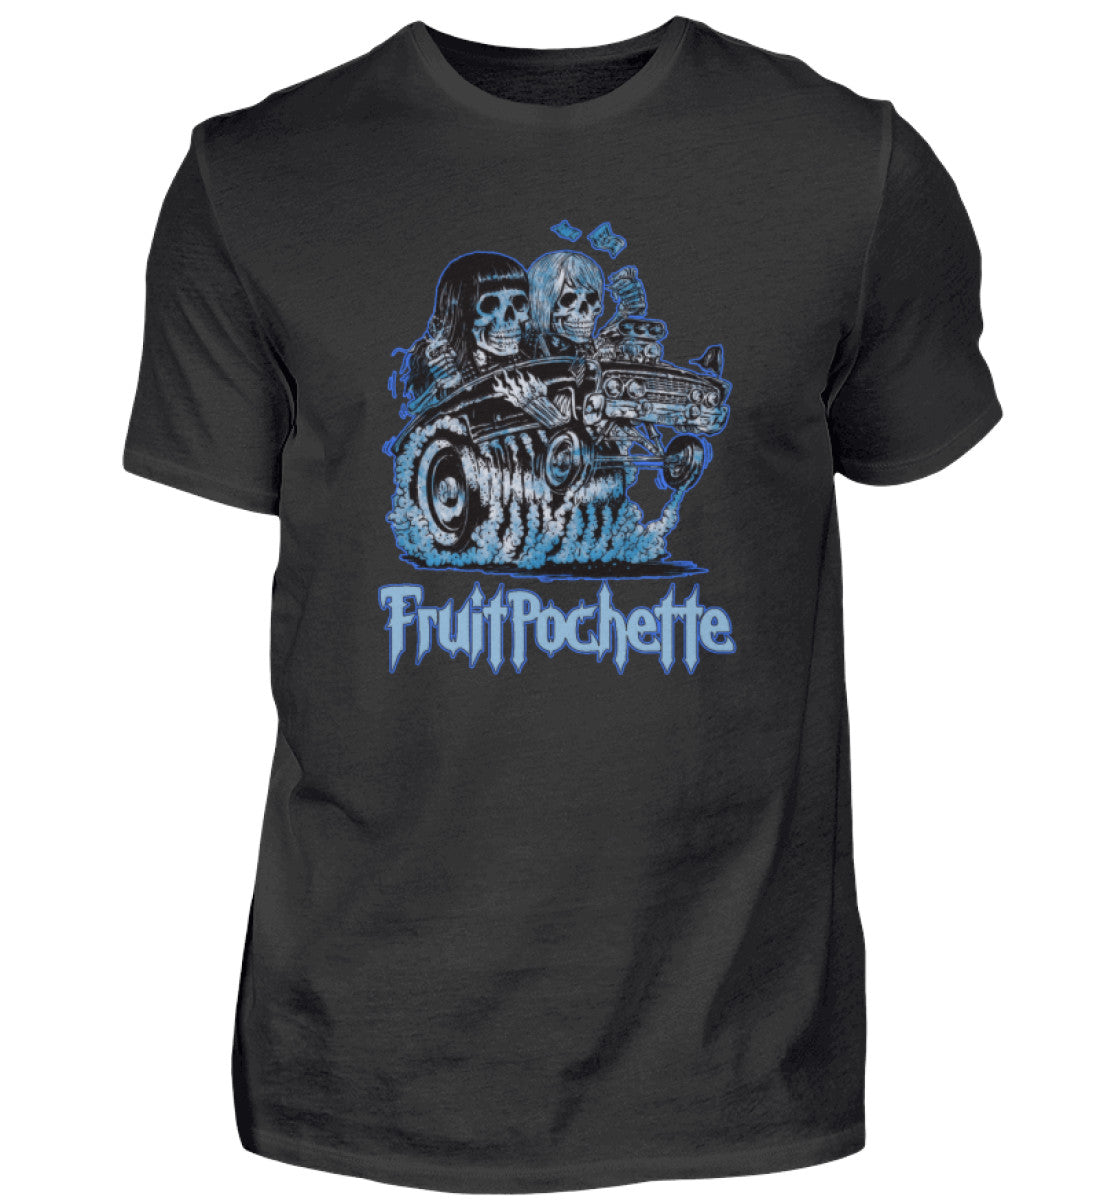 FRUITPOCHETTE T-Shirt Men